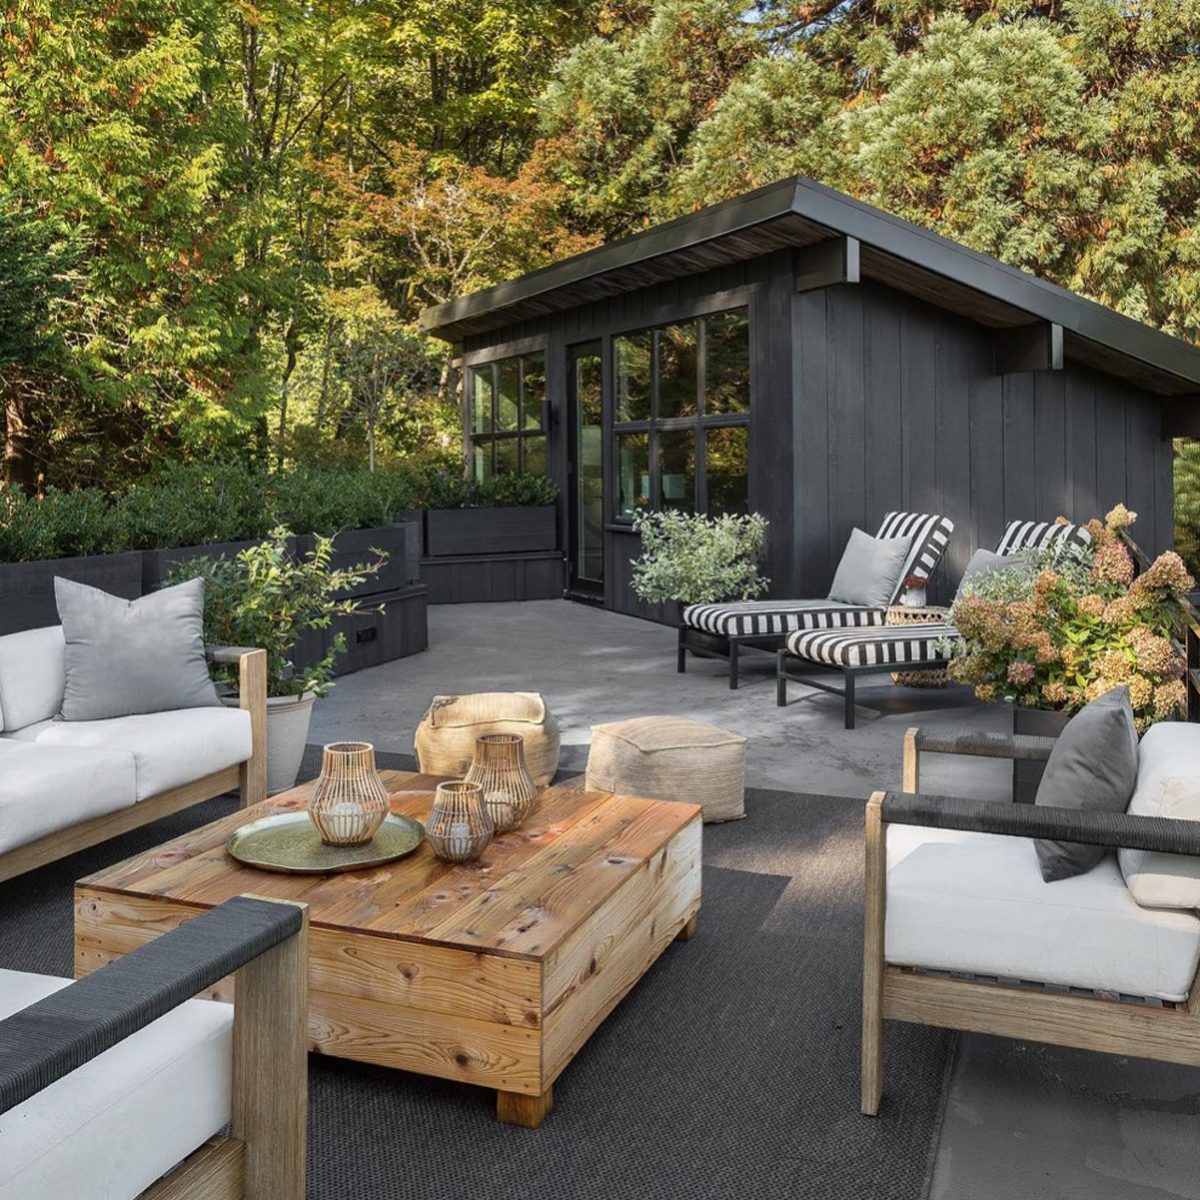 Modern Rooftop Deck Courtesy @kaylen.flugel.design Via Instagram